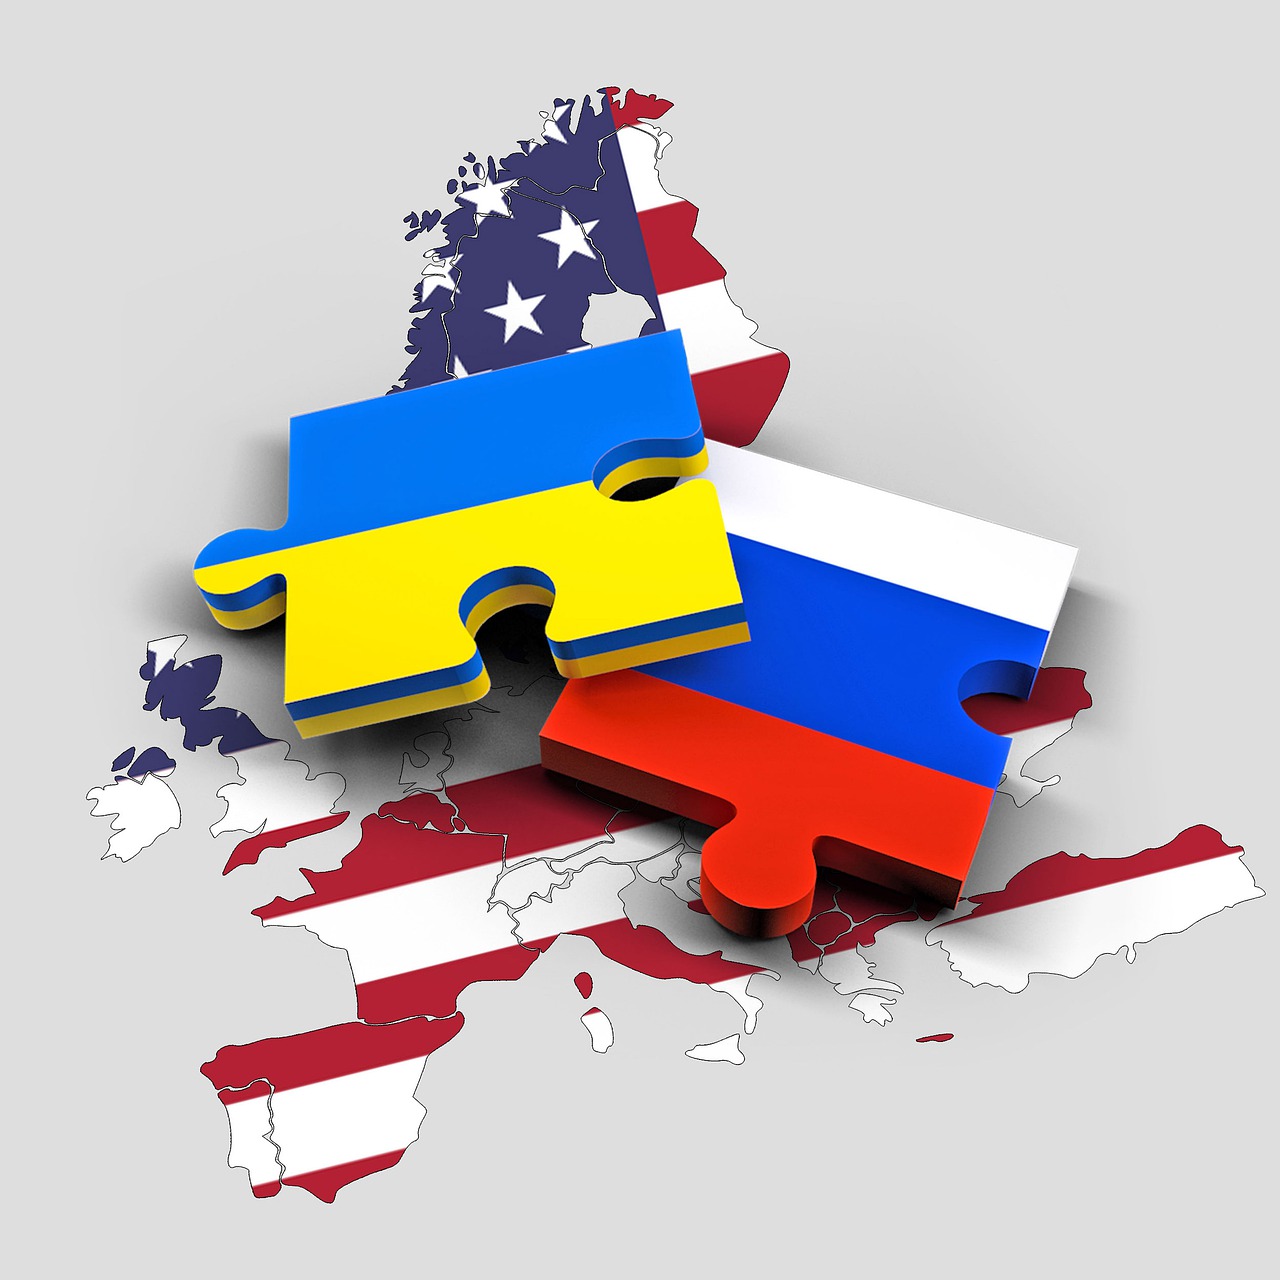 Ακόμη 1,5 δισ δολάρια ως επιπλέον βοήθεια από τις ΗΠΑ στην Ουκρανία